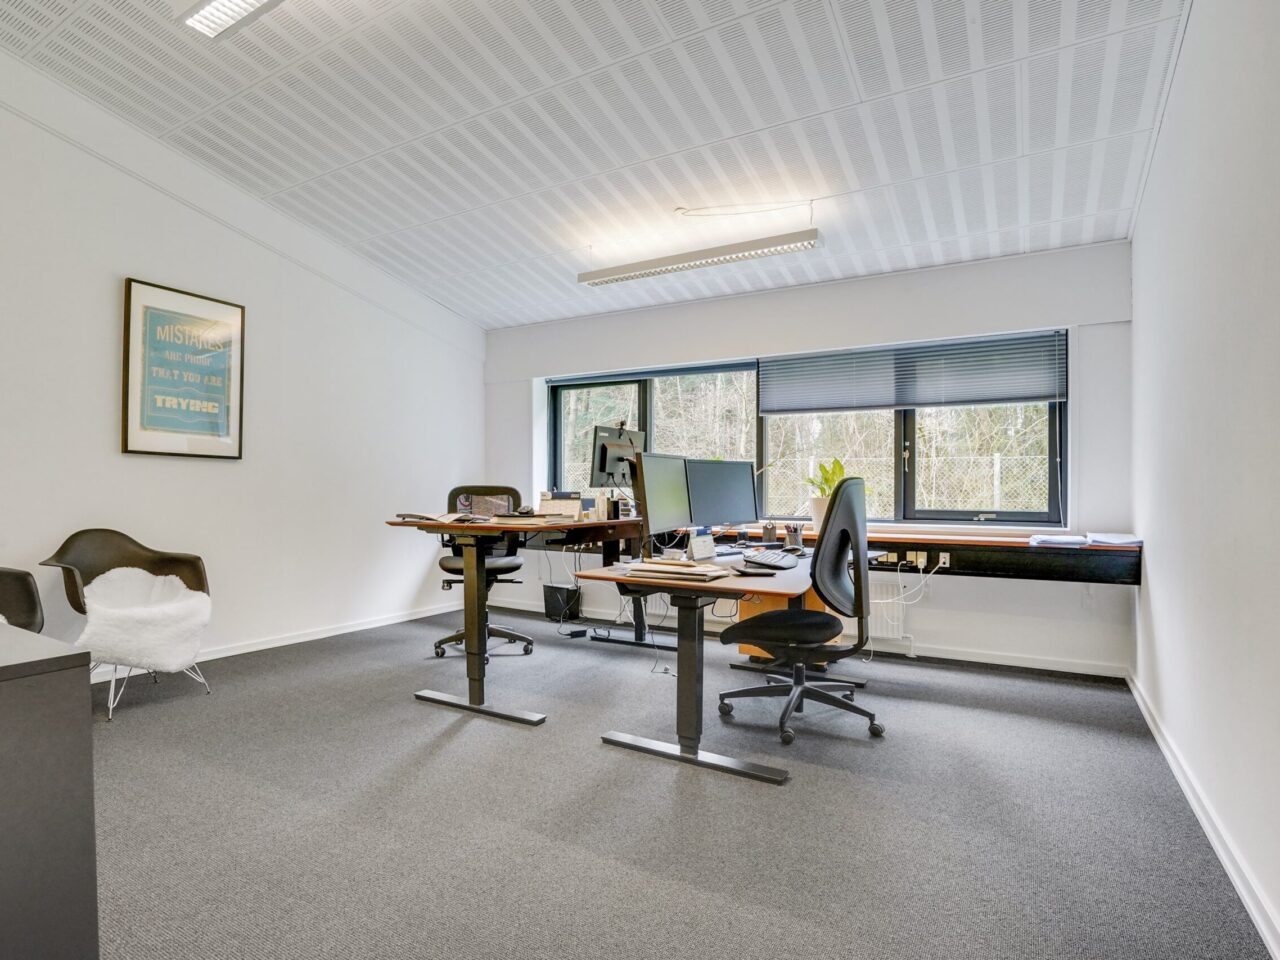 Kontorlejemål i Vejen - Kontorlokale med hvide vægge og grå gulv, der er et stort vindue og to skrivebord